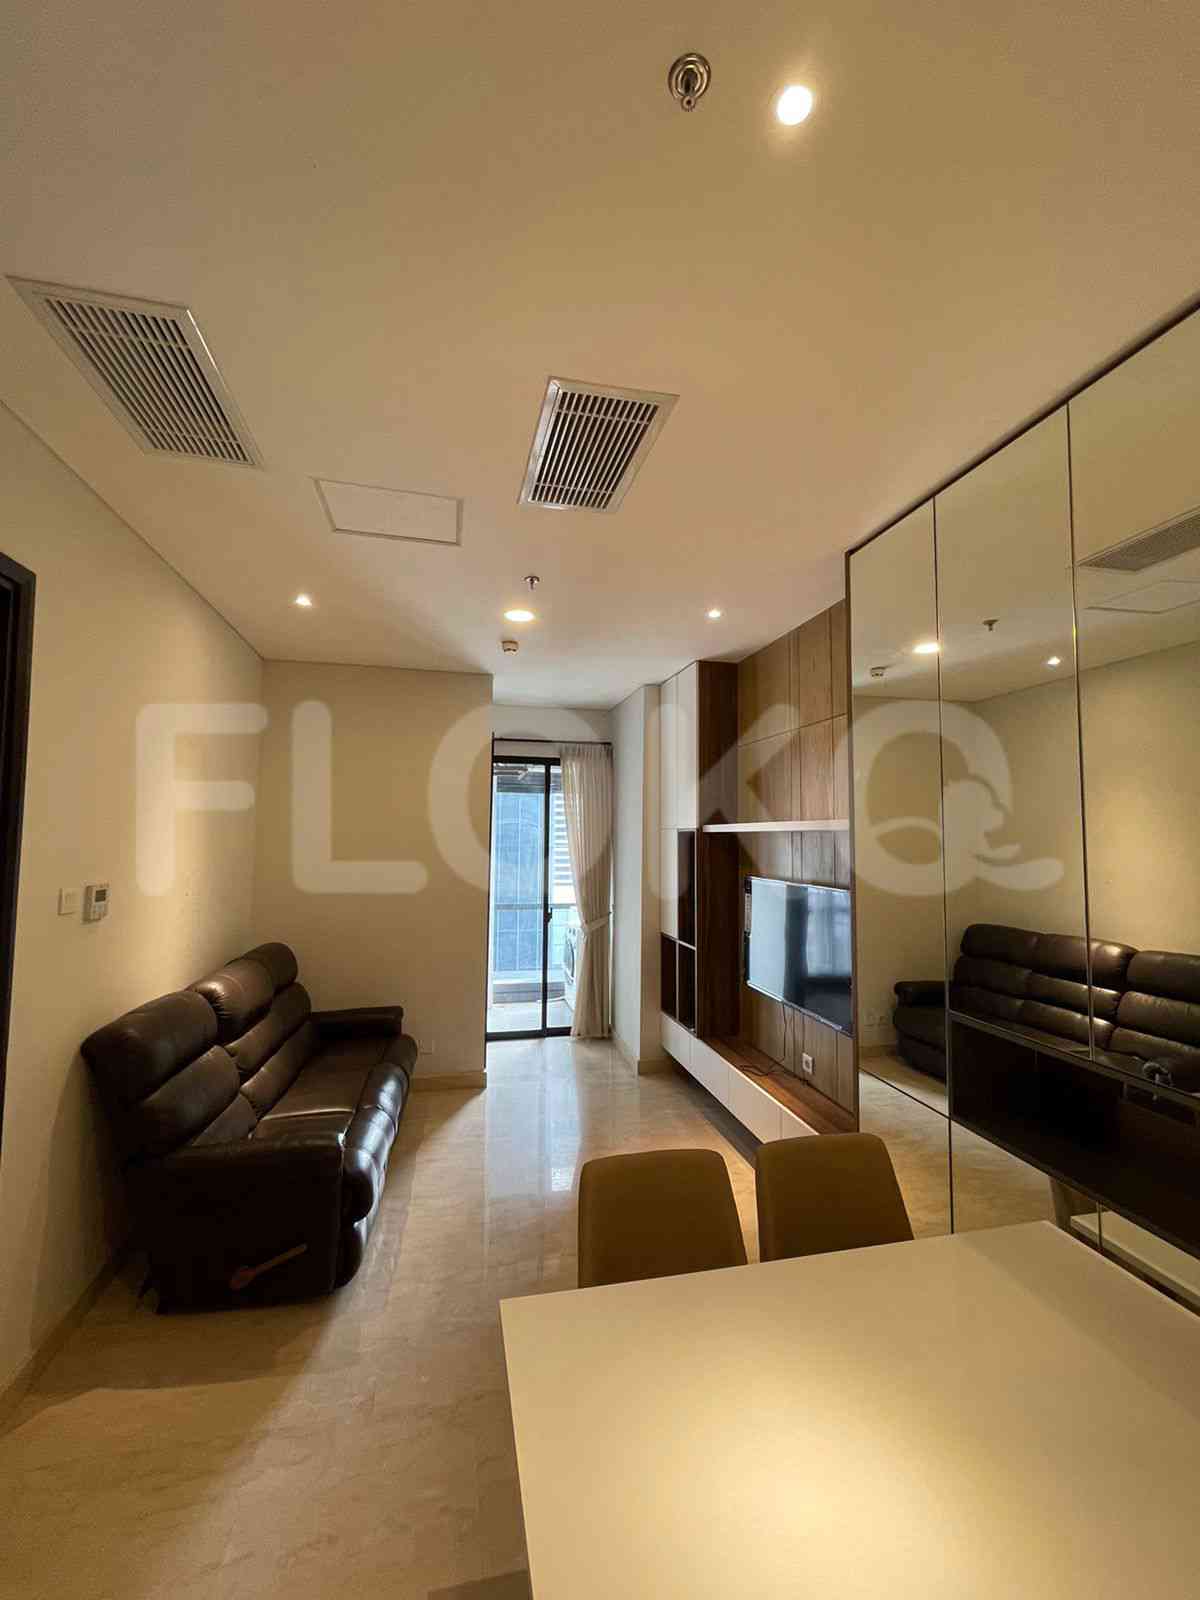 3 Bedroom on 10th Floor for Rent in Sudirman Suites Jakarta - fsuaf7 7